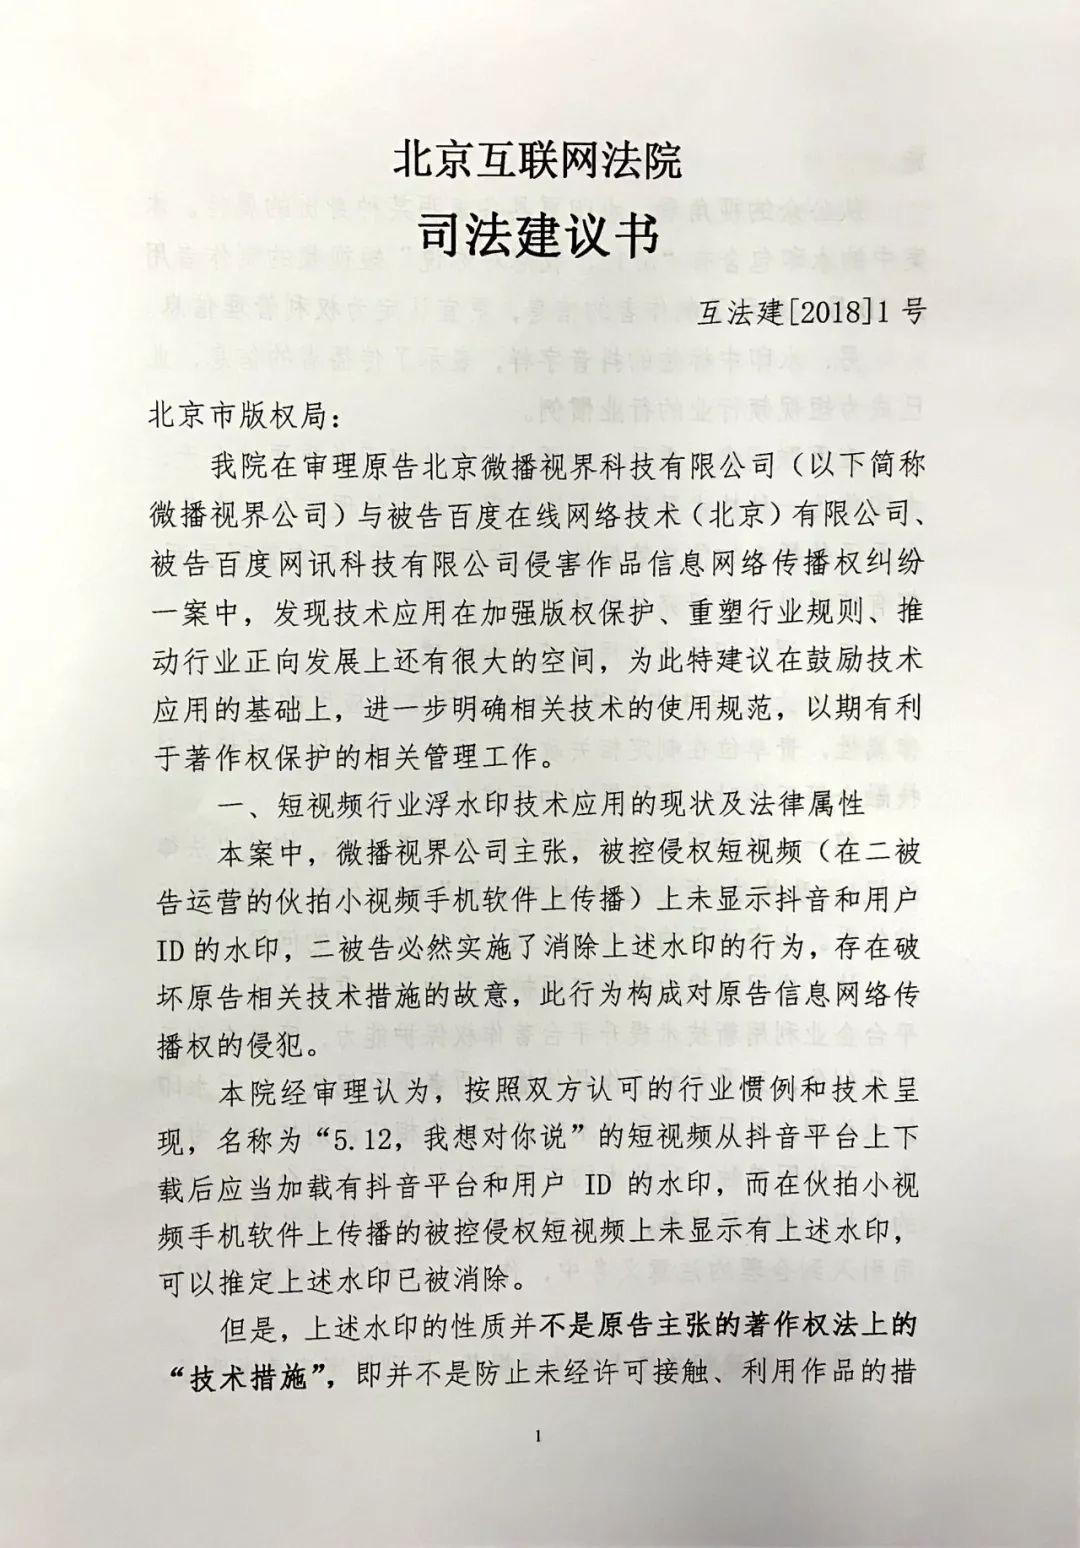  司法建议于今日电子送达北京市版权局，纸质版一并邮寄。互联网法院供图